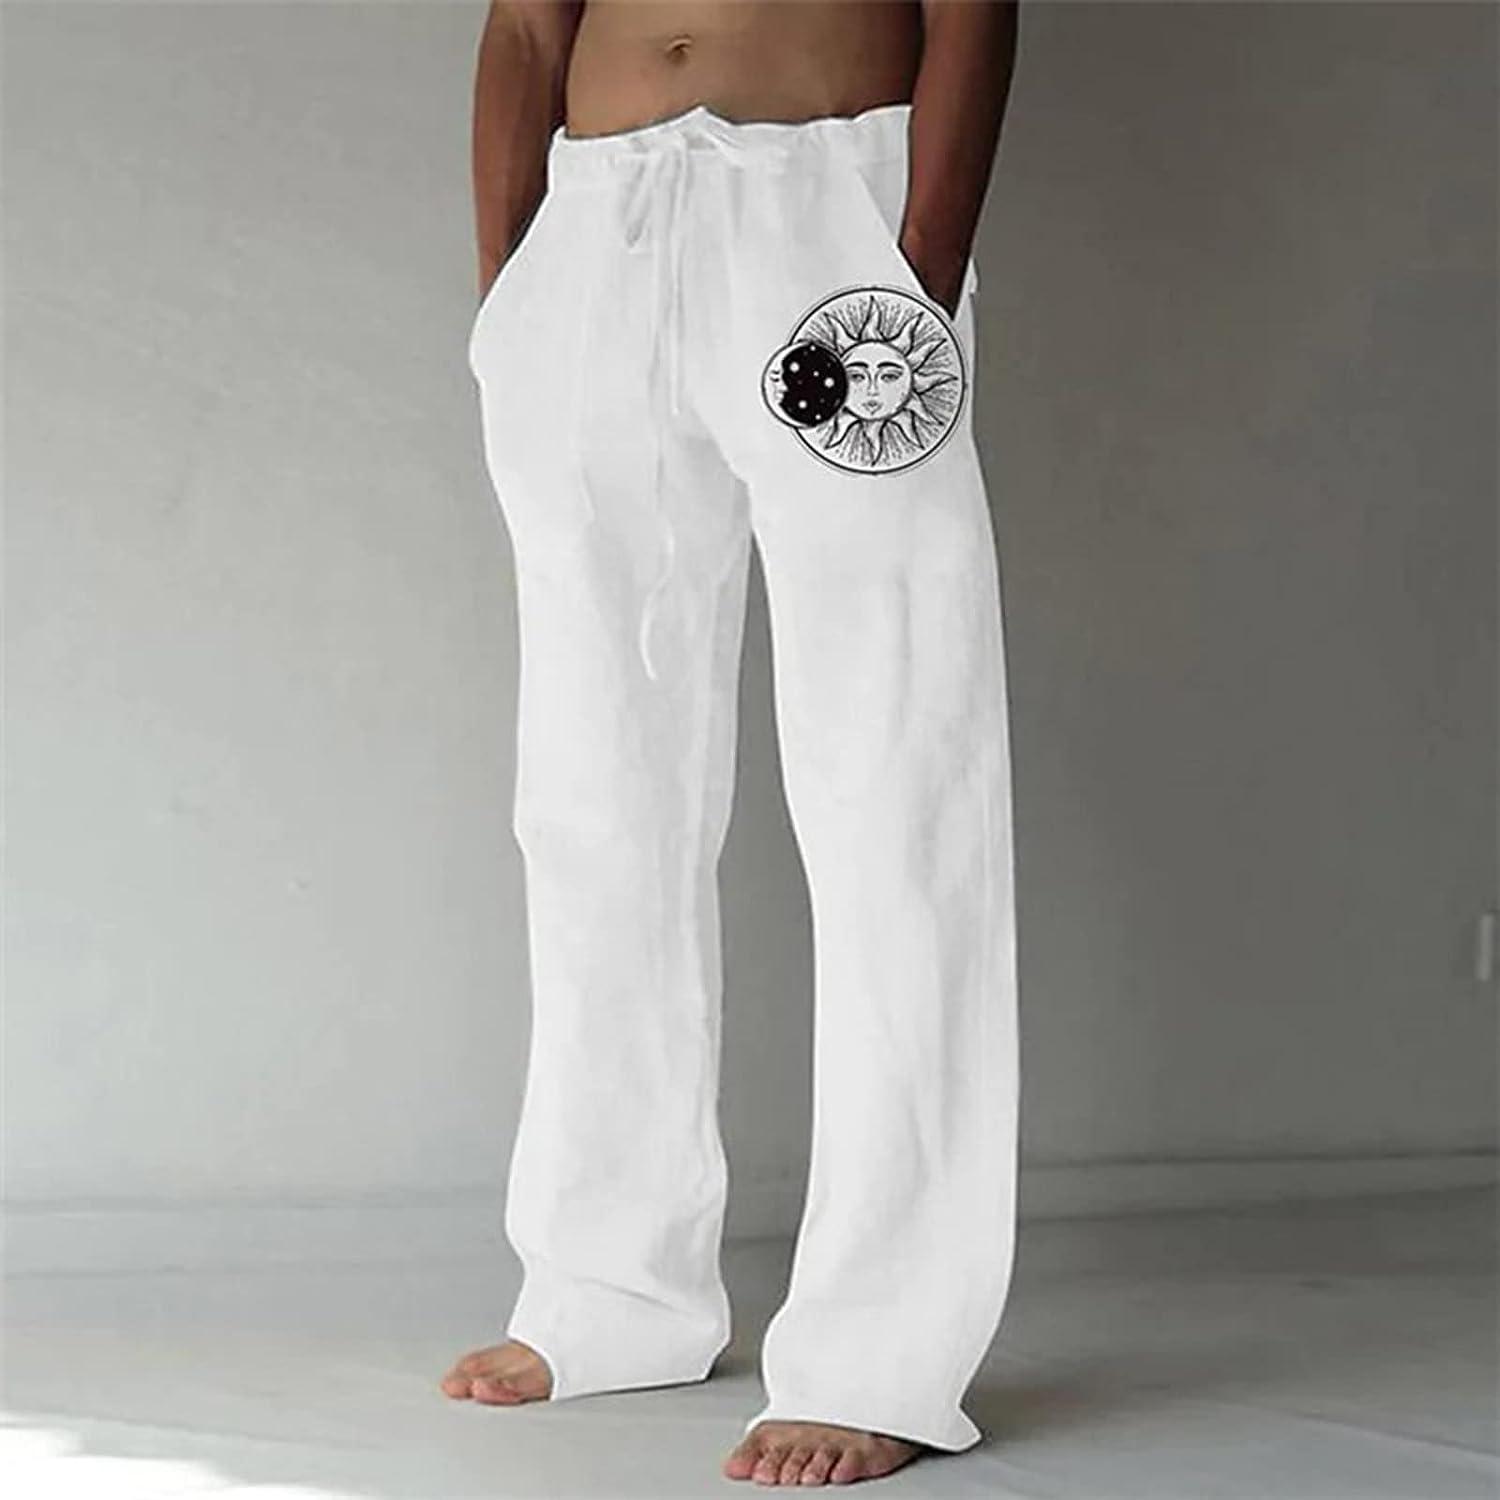 White dance pants